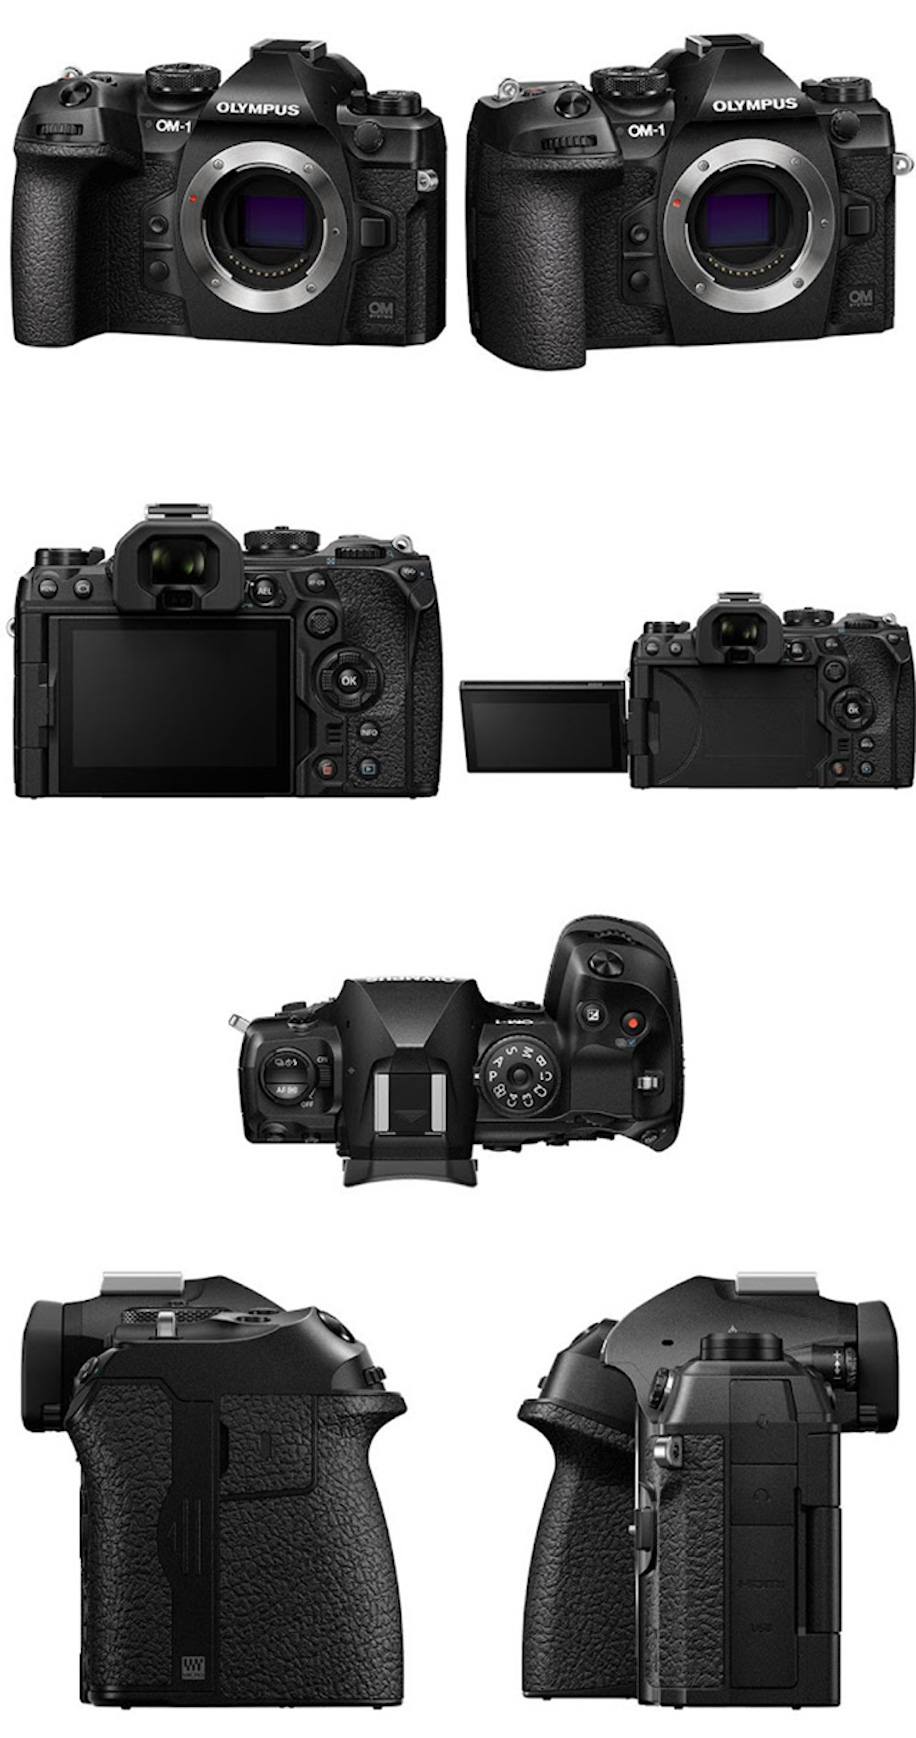 OM-System-OM-1-high-end-flagship-mirrorless-camera.jpg